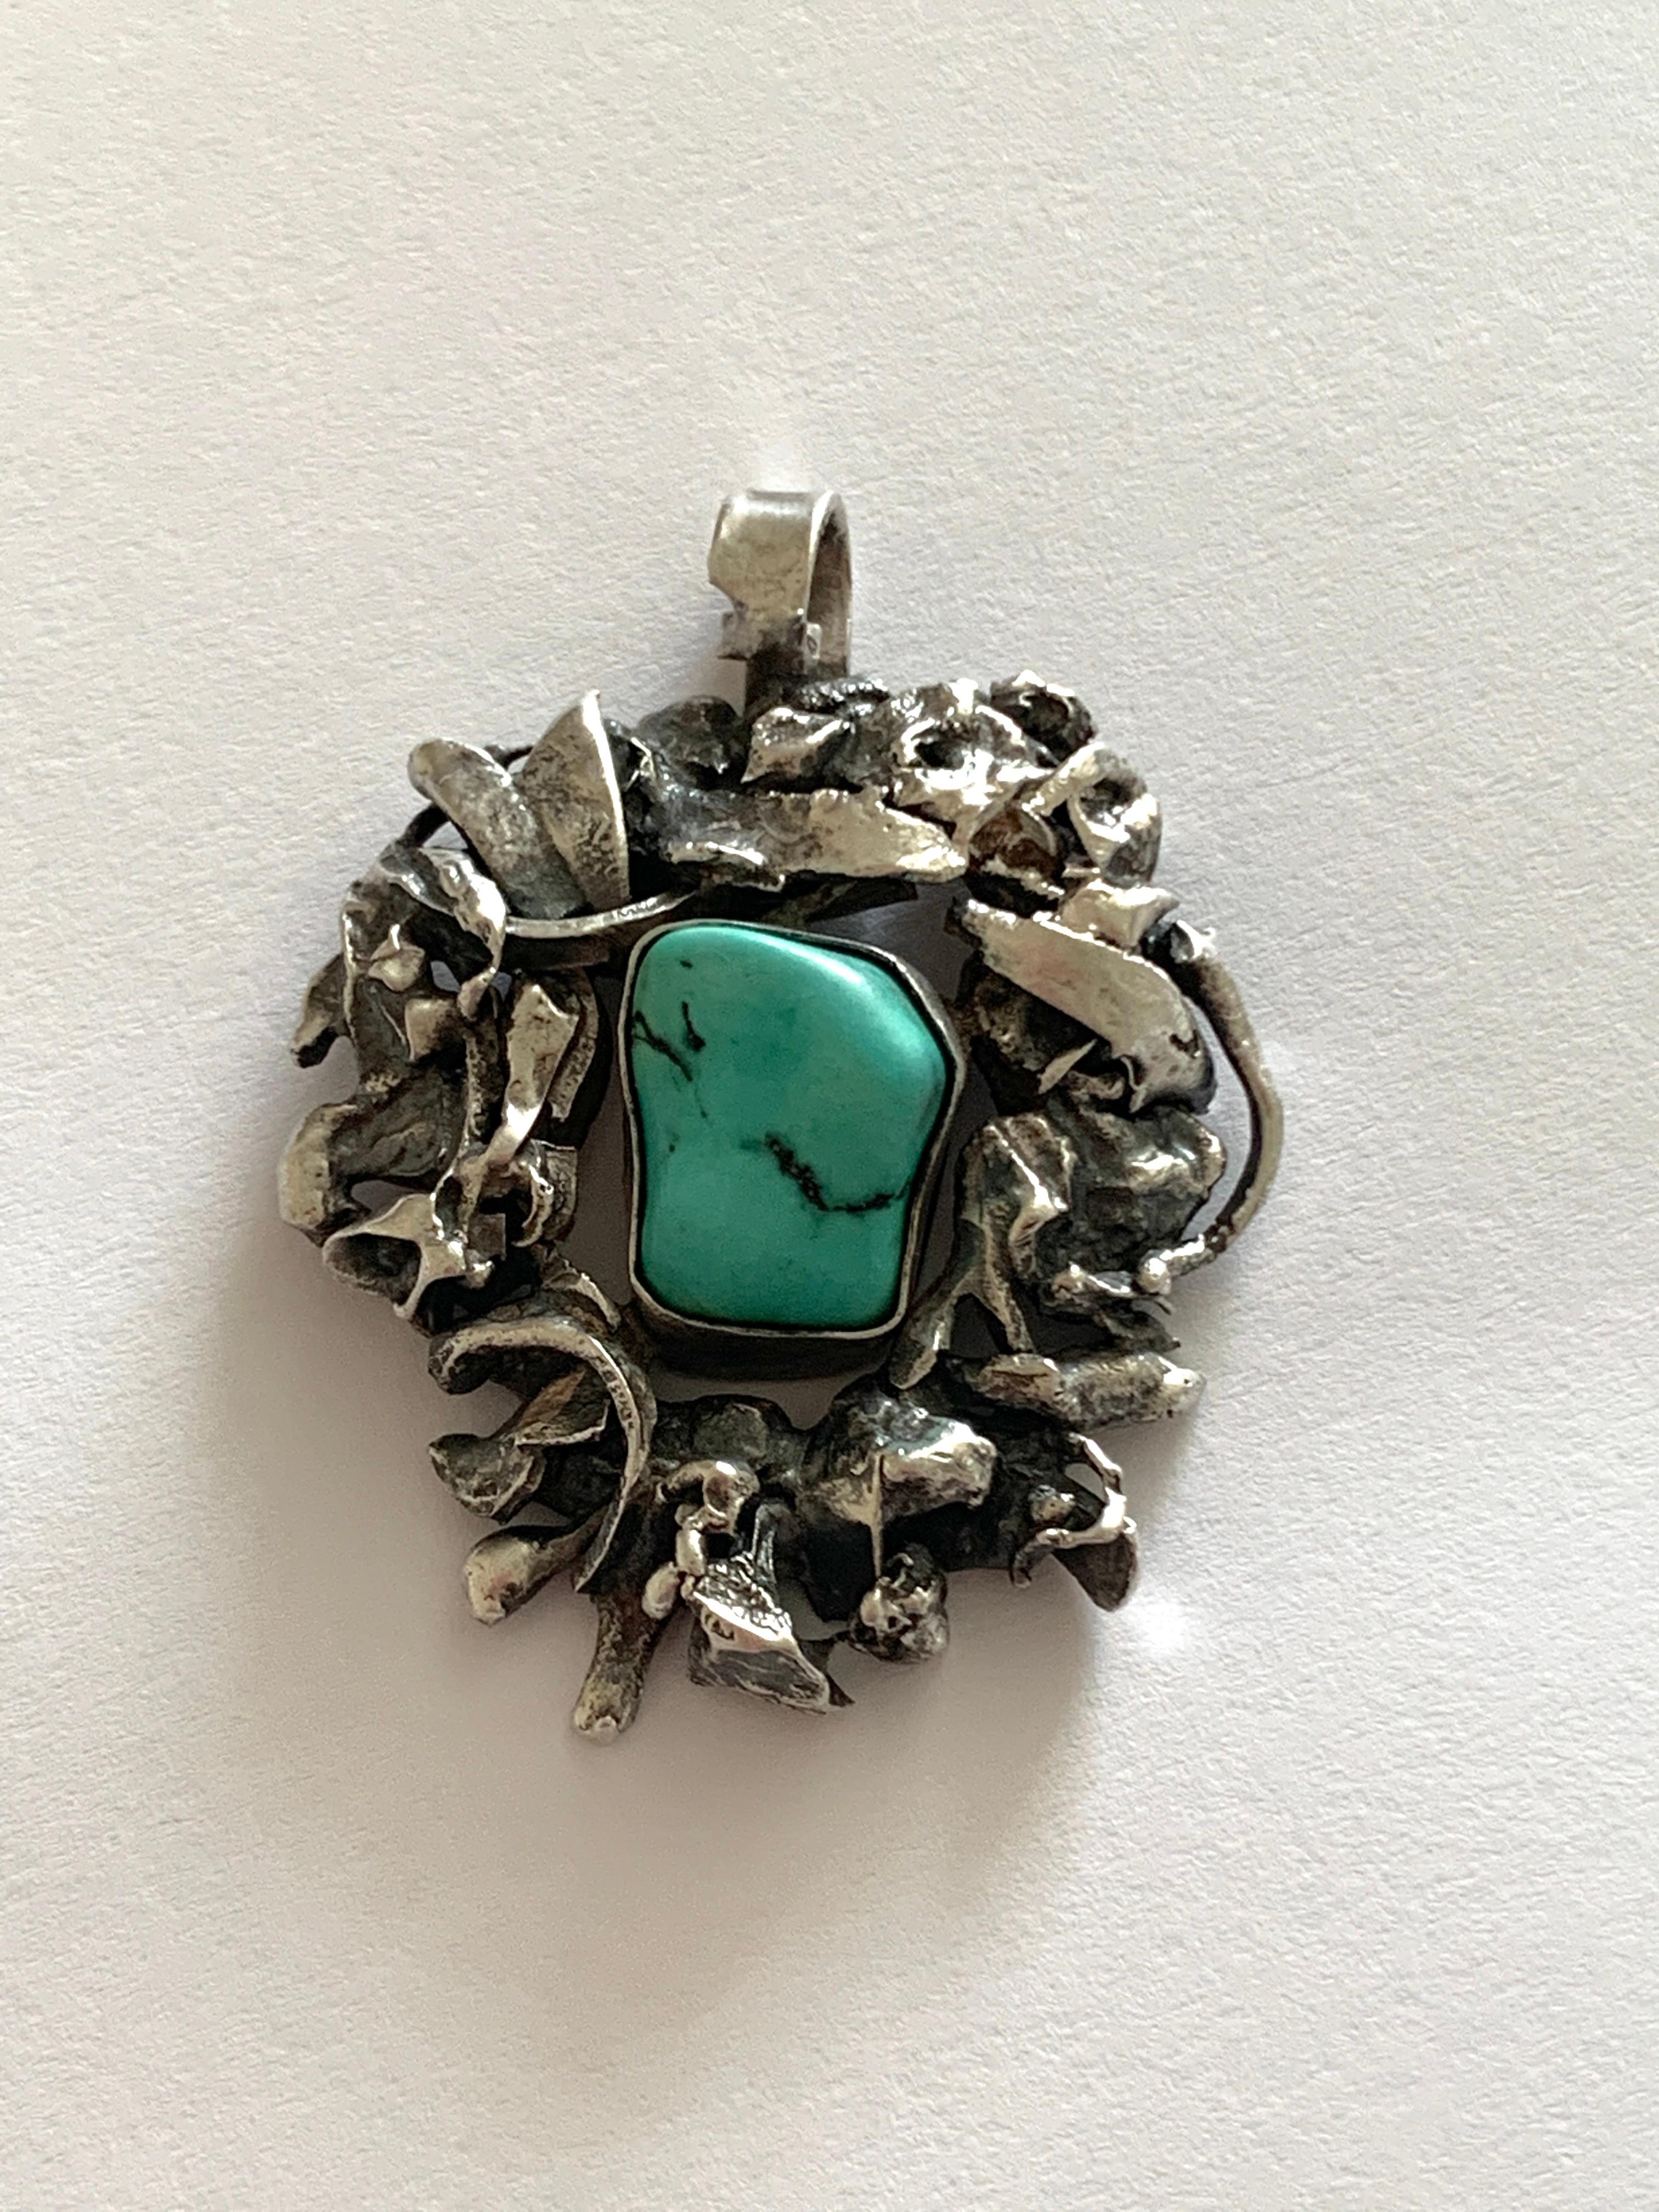 Magnifique pendentif Brutalist en argent sterling fait à la main
avec une luxueuse pierre centrale en turquoise.

Design/One
Circa 1970
Estampillé au verso 